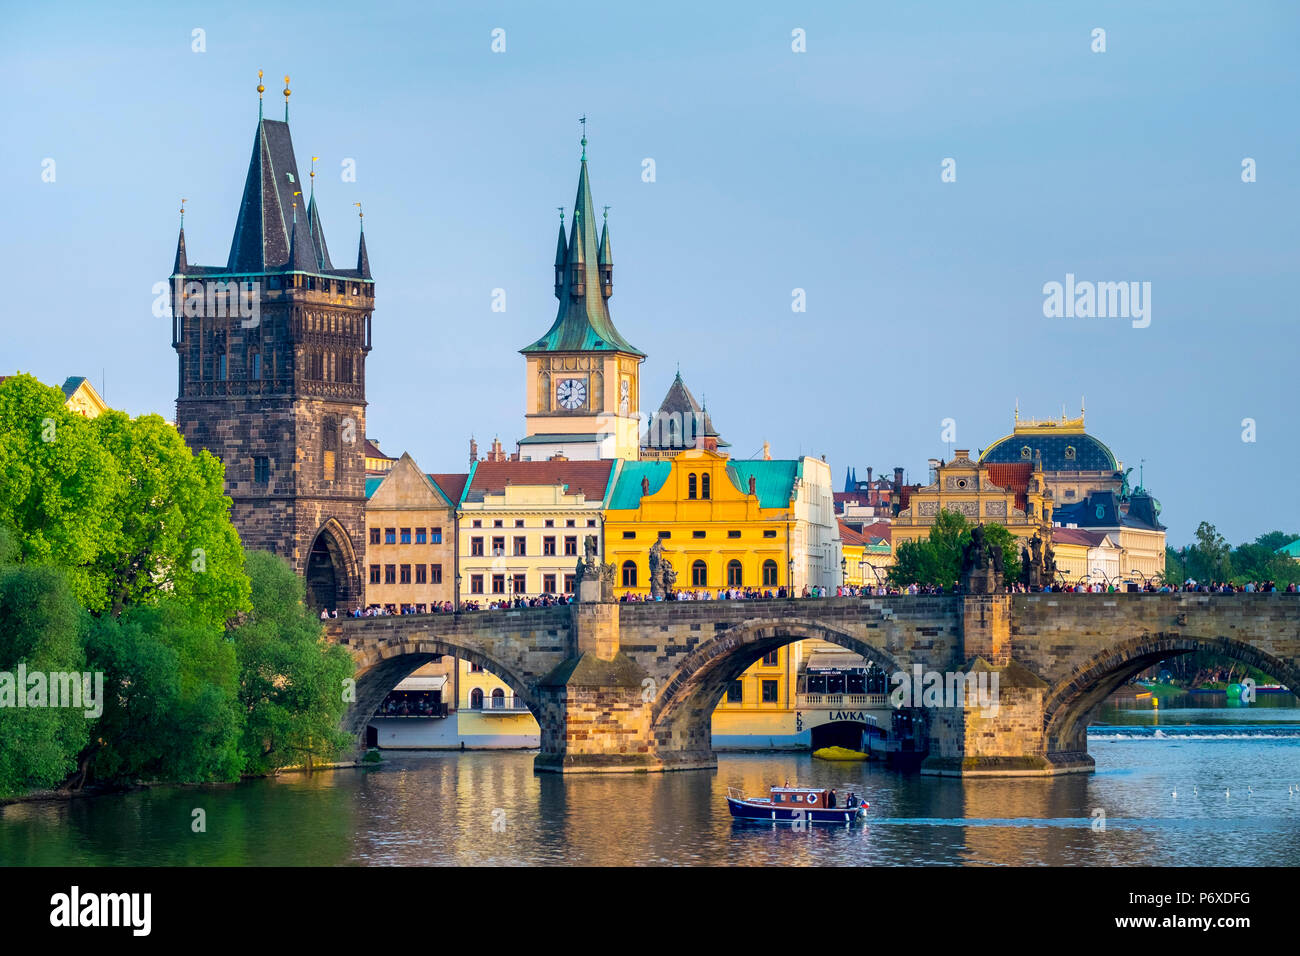 Tschechische Republik, Prag - Mala Strana. Blick auf die Karlsbrücke und der Altstädter Brückenturm an der Moldau. Stockfoto